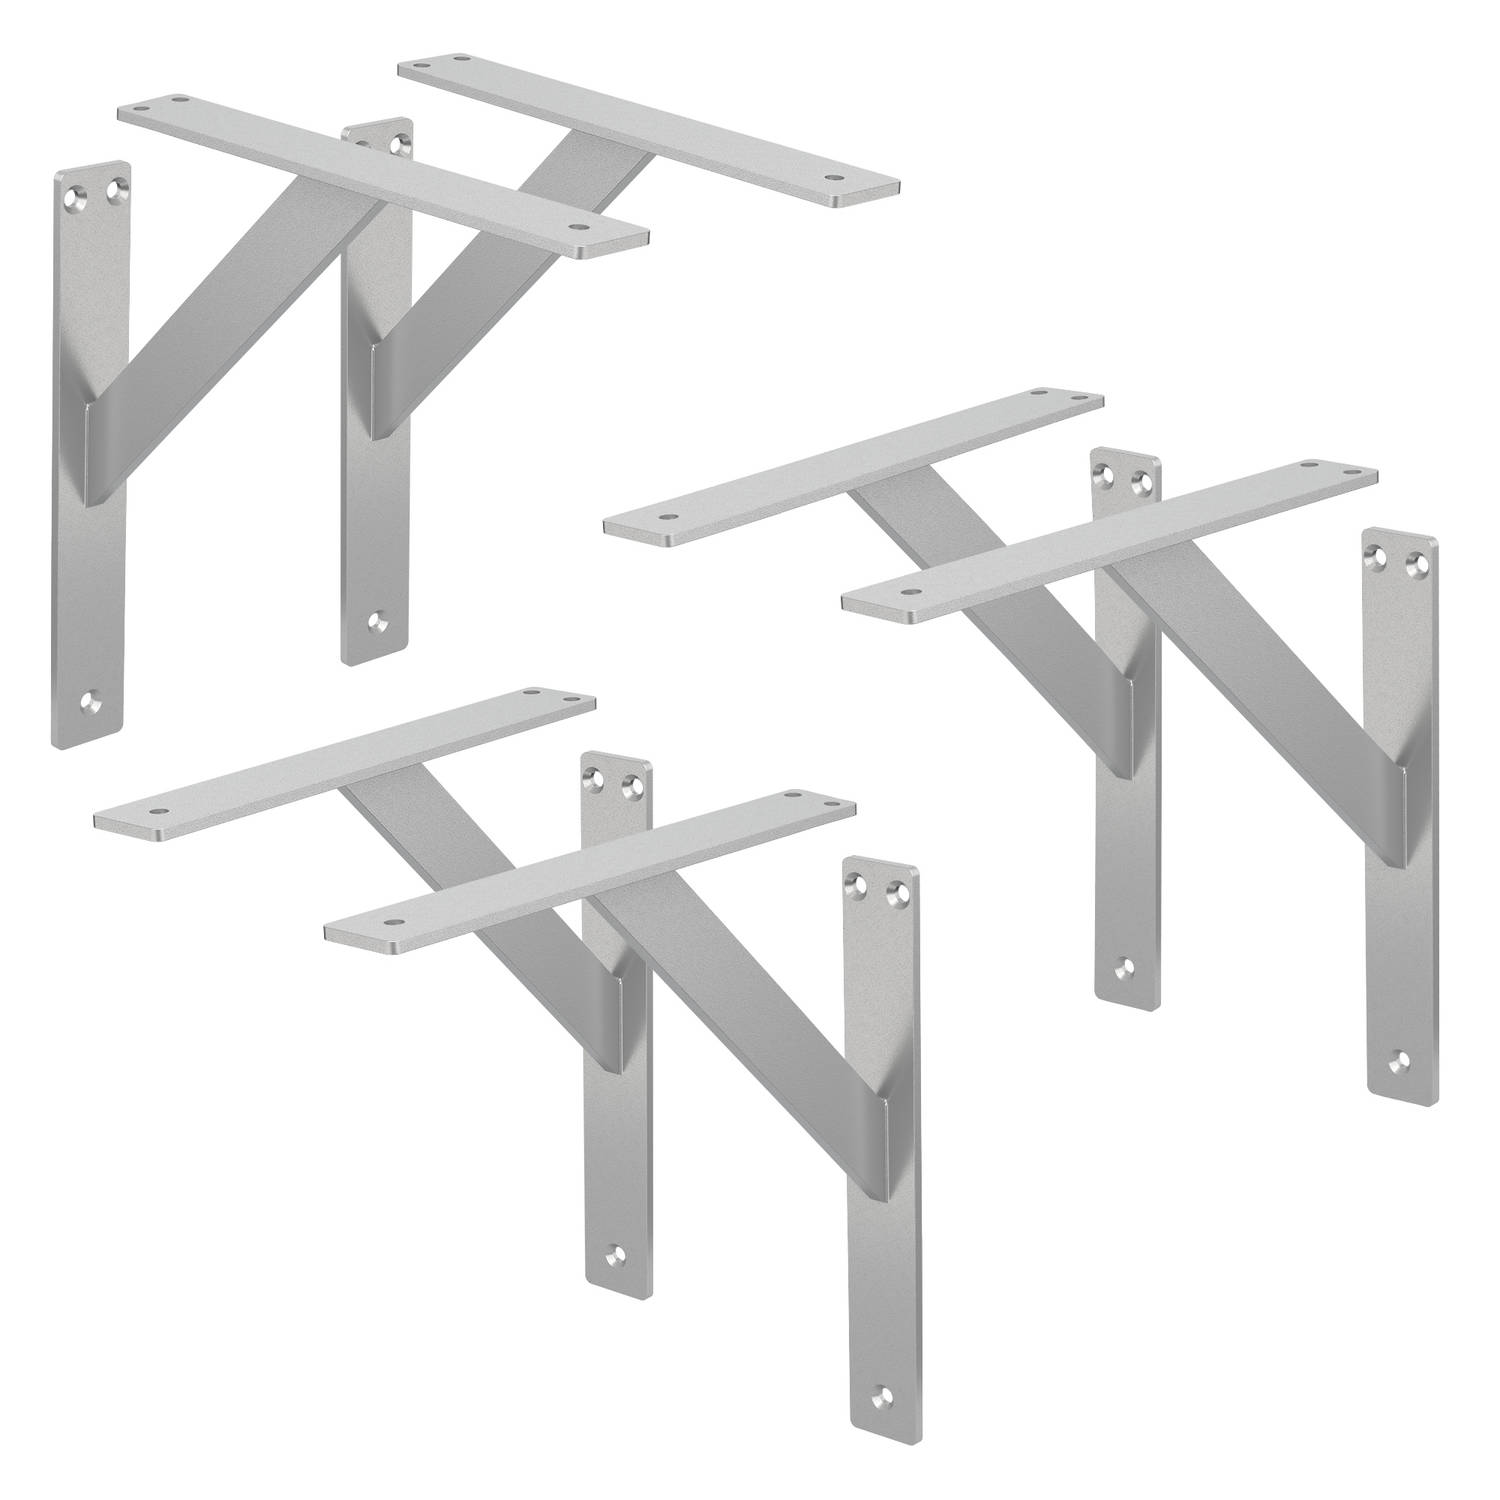 ML-Design 6 stuks plankdrager 240x240 mm, zilver, aluminium, zwevende plankdrager, plankdrager, wanddrager voor plankdrager, plankdrager voor wandmontage, wandplankdrager plankdrag